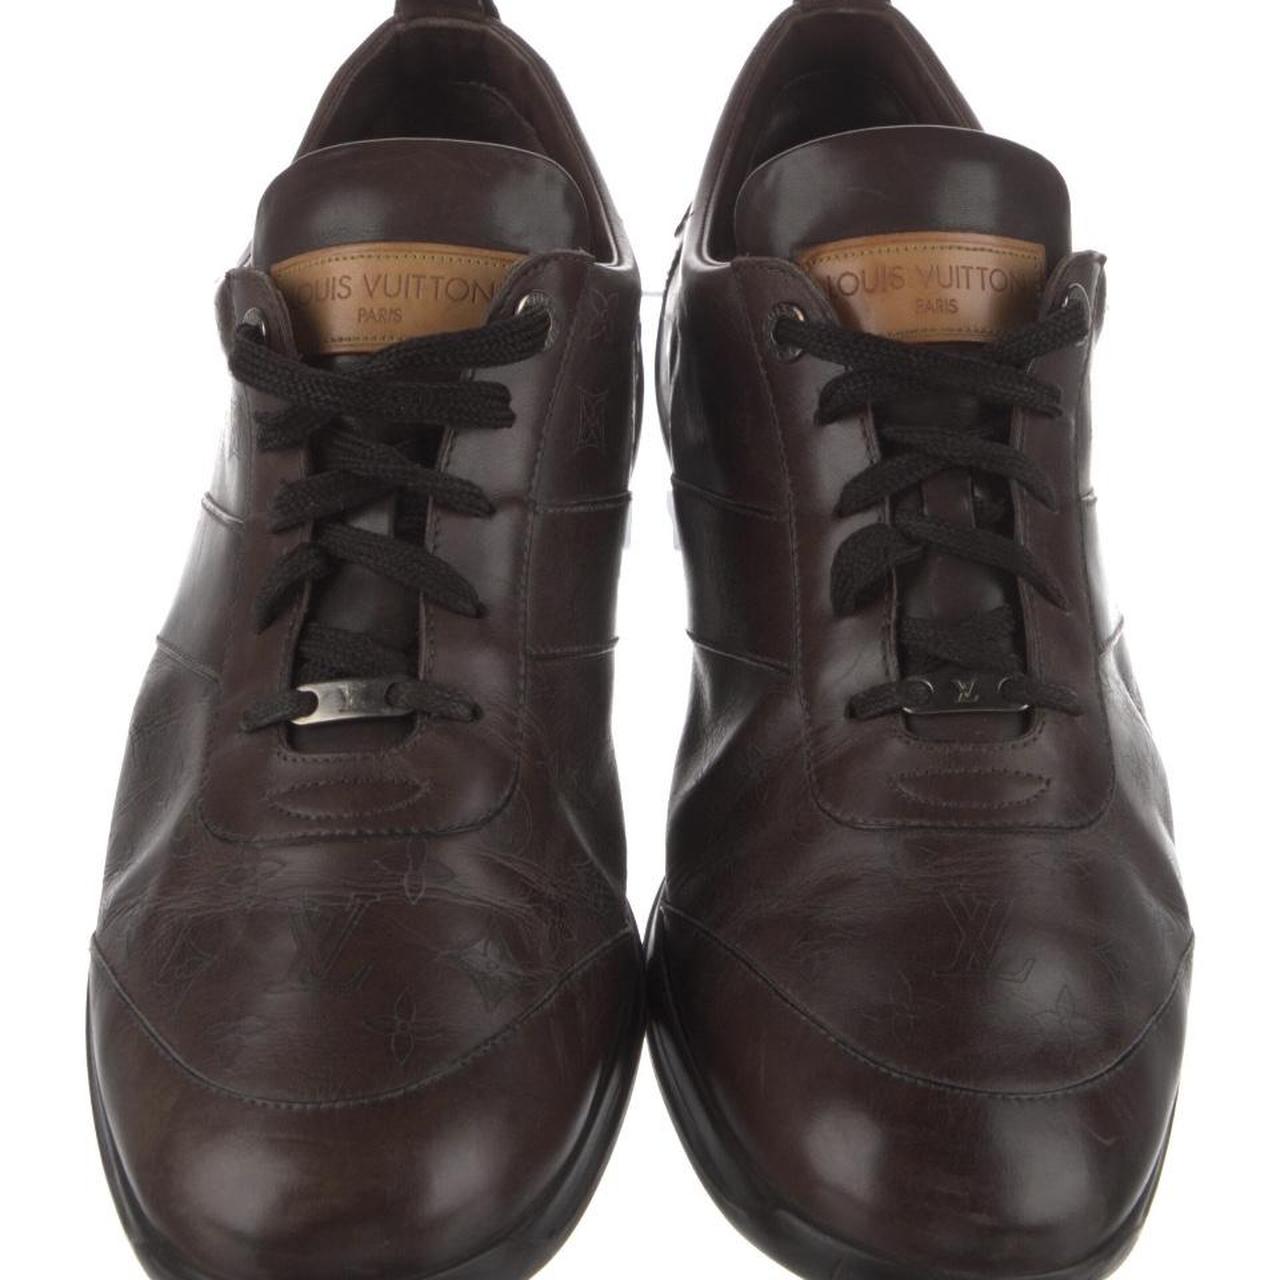 Brown leather, Louis Vuitton, authentic formal MEN - Depop